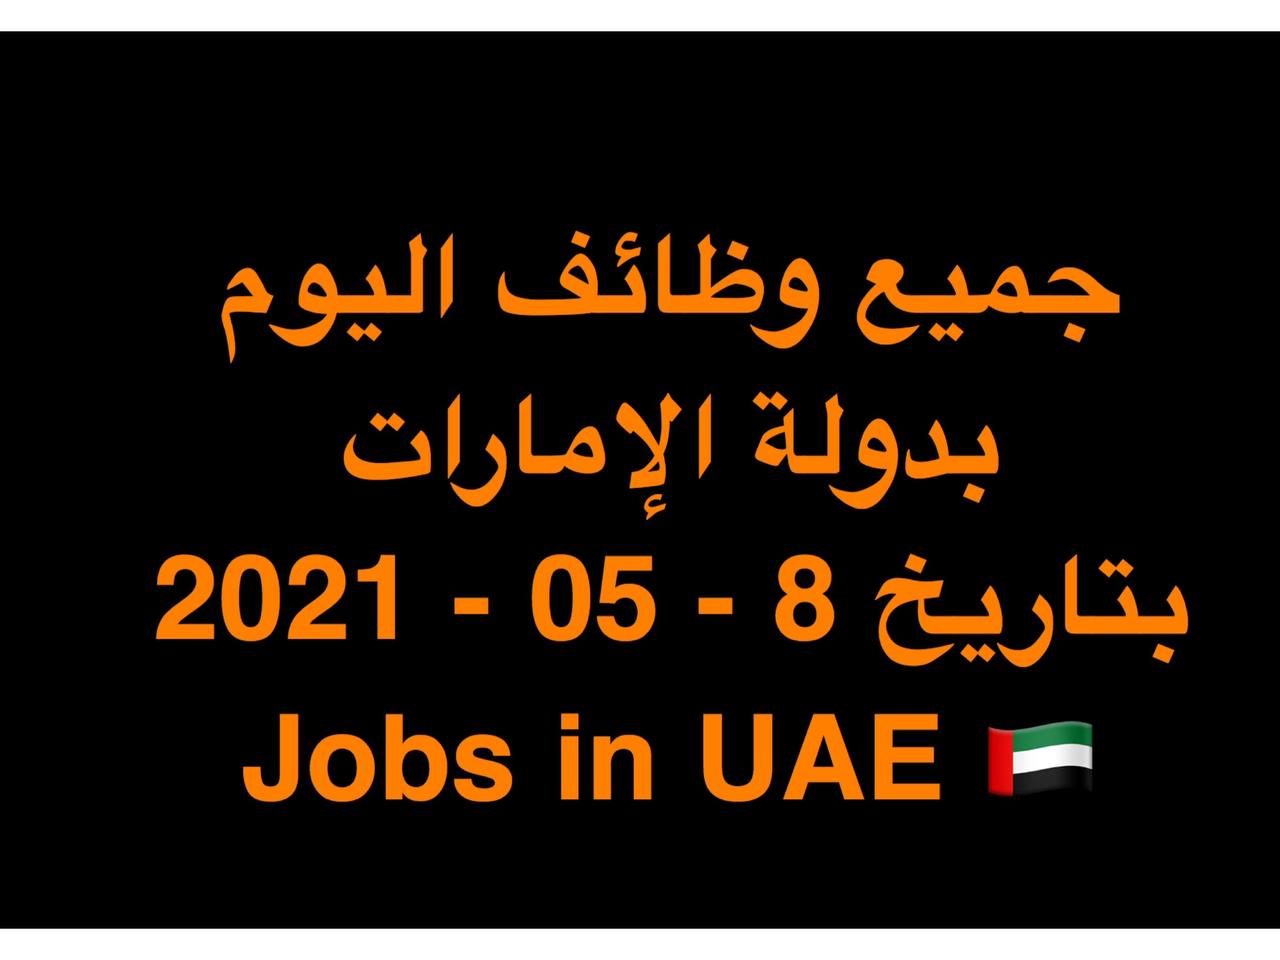 وظائف JOBS-IN-UAE-2021-05-8 في الإمارات | JOBS IN UAE     وظائف مايو 2021 خالية وفرص عمل بالامارات وحصل على وظيفة الان في الامارات اليوم ( 8 مايو 2021 ) لجميع التخصصات يومي في دولة الامارات للمواطنين والمقيمين بالامارات بتاريخ 8-05-2021 الوظائف المعلنة في الشركات والمؤسسات والقطاعات الحكومية والخاصة بدولة الامارات بتاريخ (8 مايو 2021 ) لكلٍ من المواطنين والمقيمين بدولة الامارات .